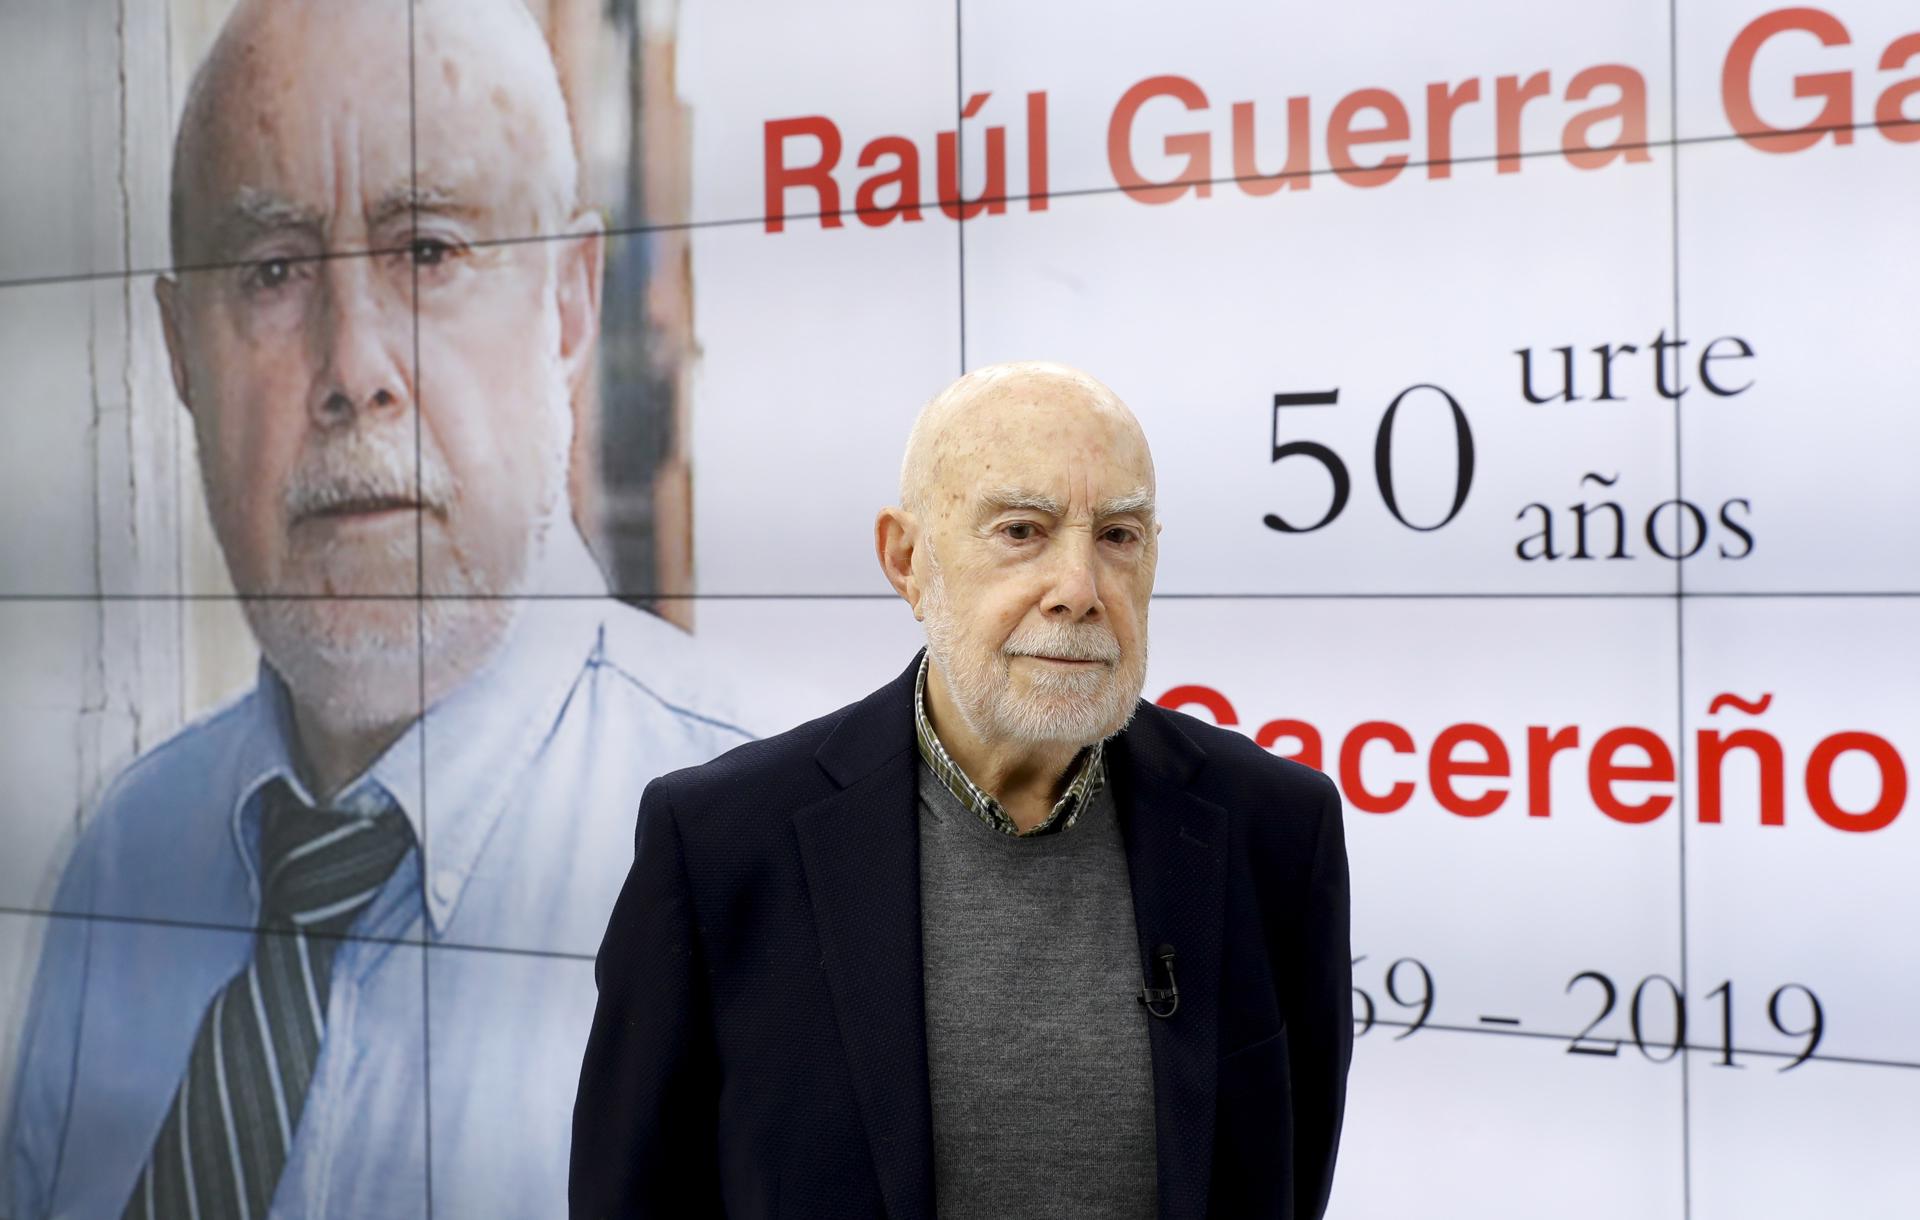 Fallece el escritor Raúl Guerra Garrido a los 87 años - EFE Noticias